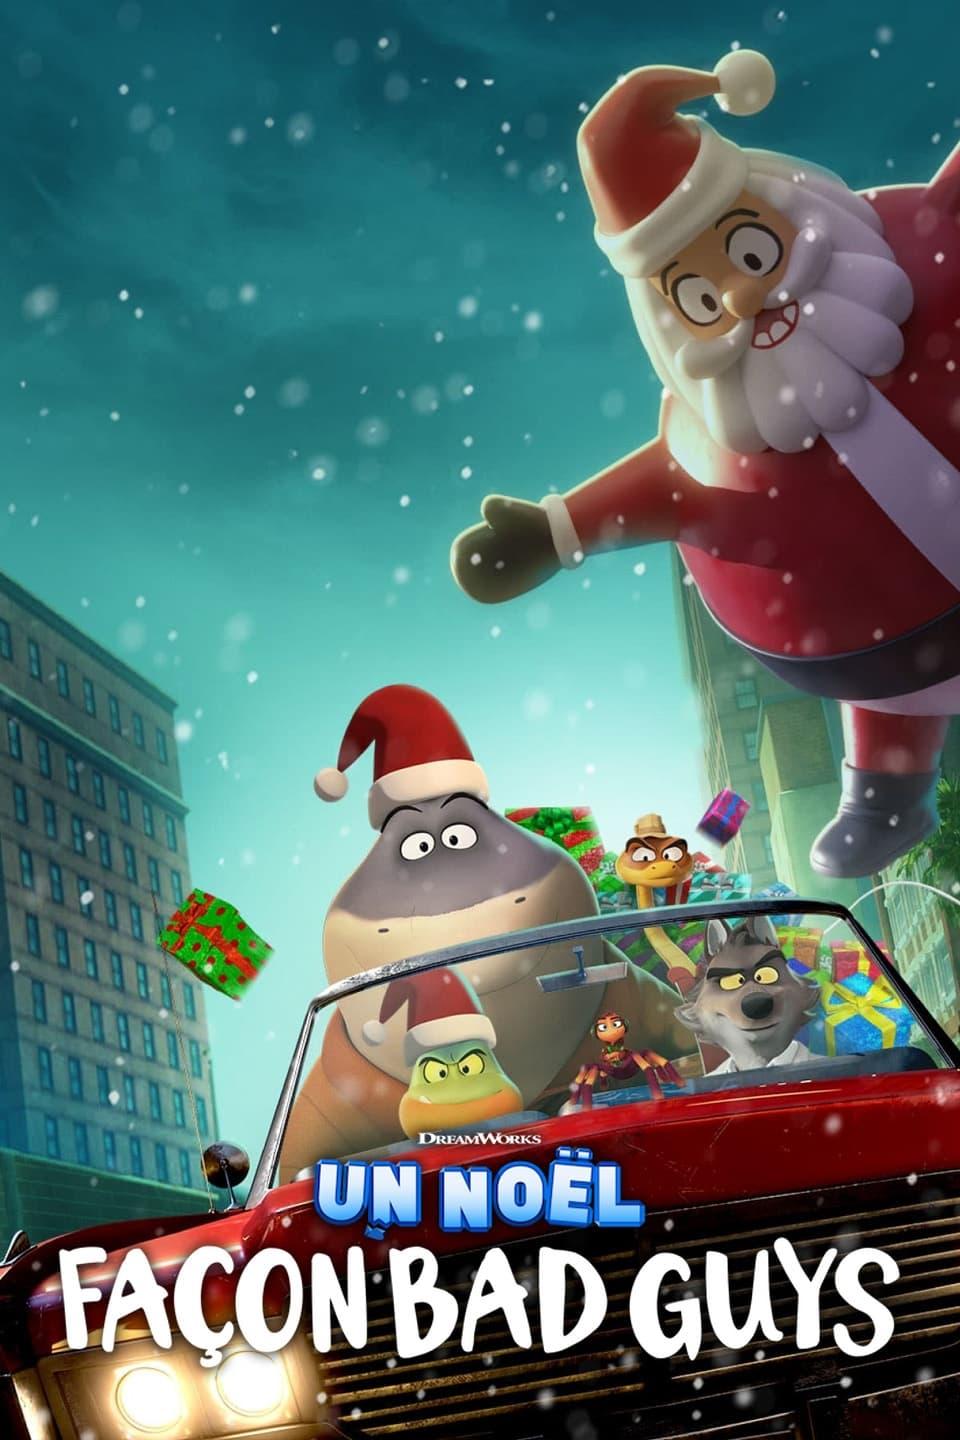 Un Noël façon Bad Guys est-il disponible sur Netflix ou autre ?